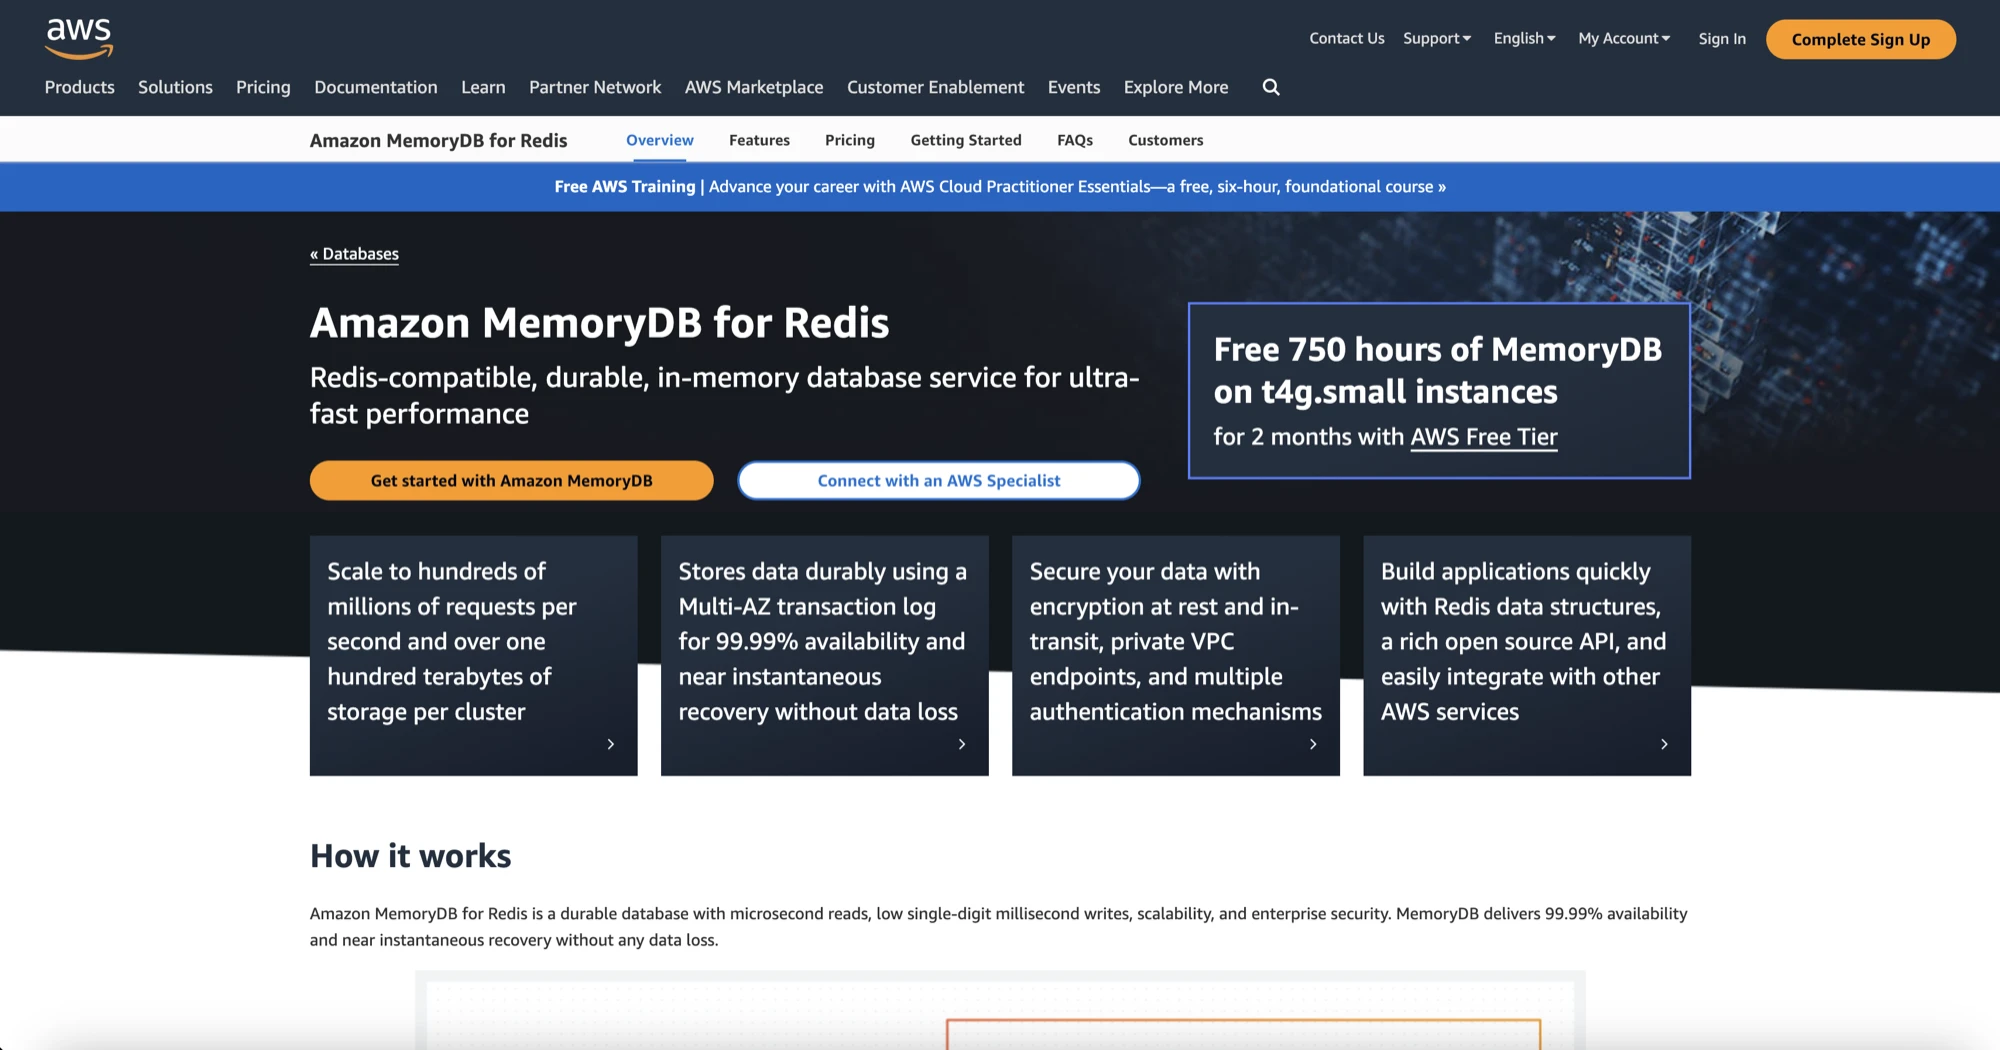 Amazon MemoryDB!